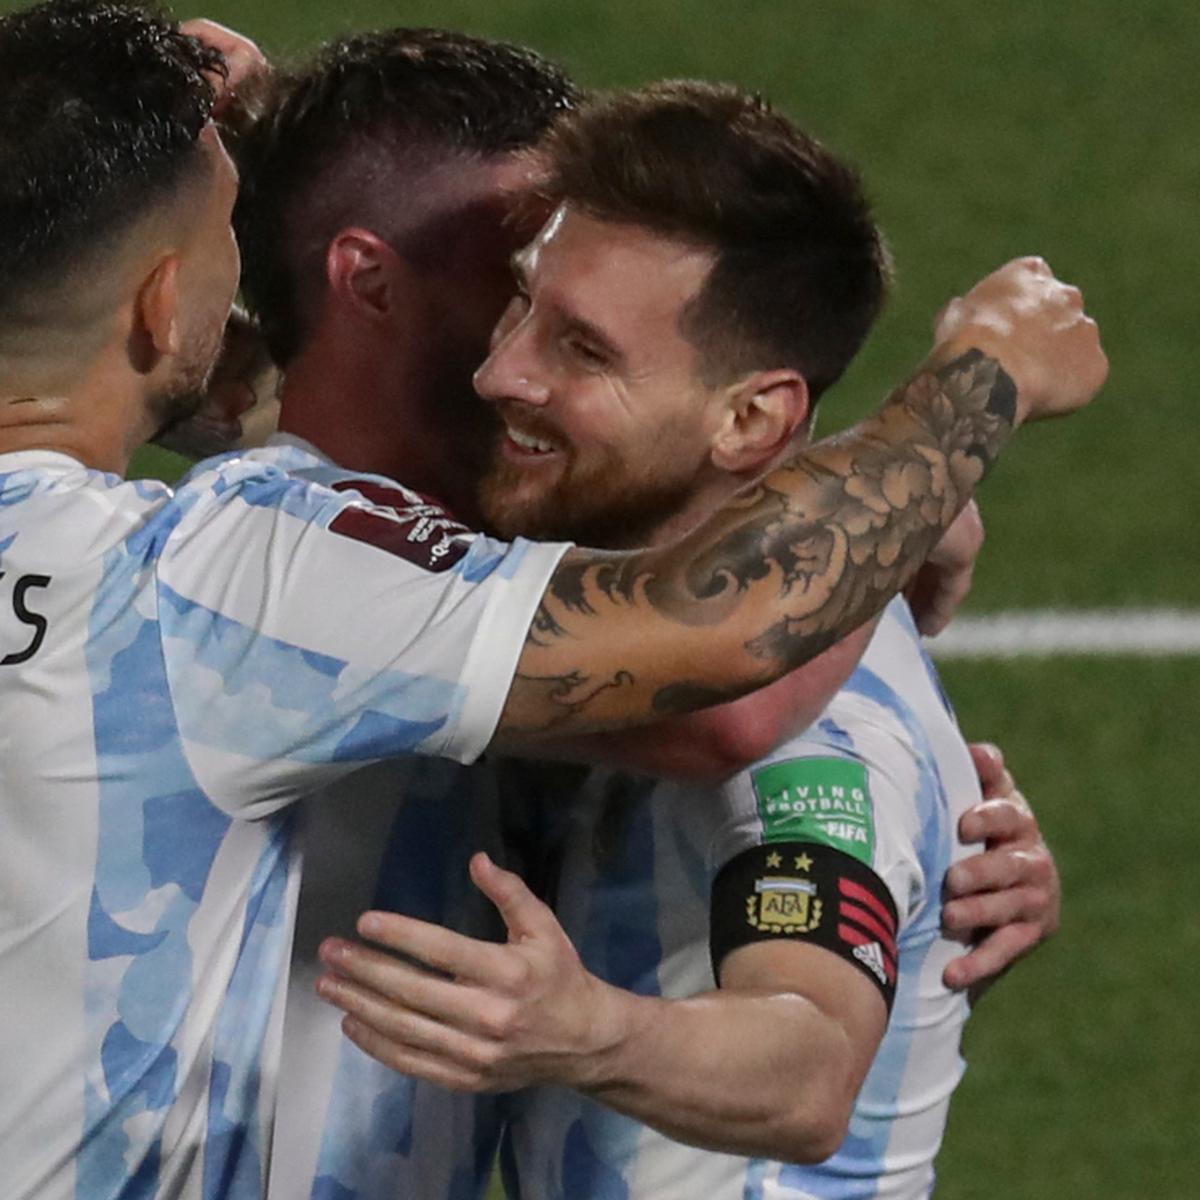 Argentina - Uruguay: horario y formaciones del partido hoy en el Monumental  - El Cronista